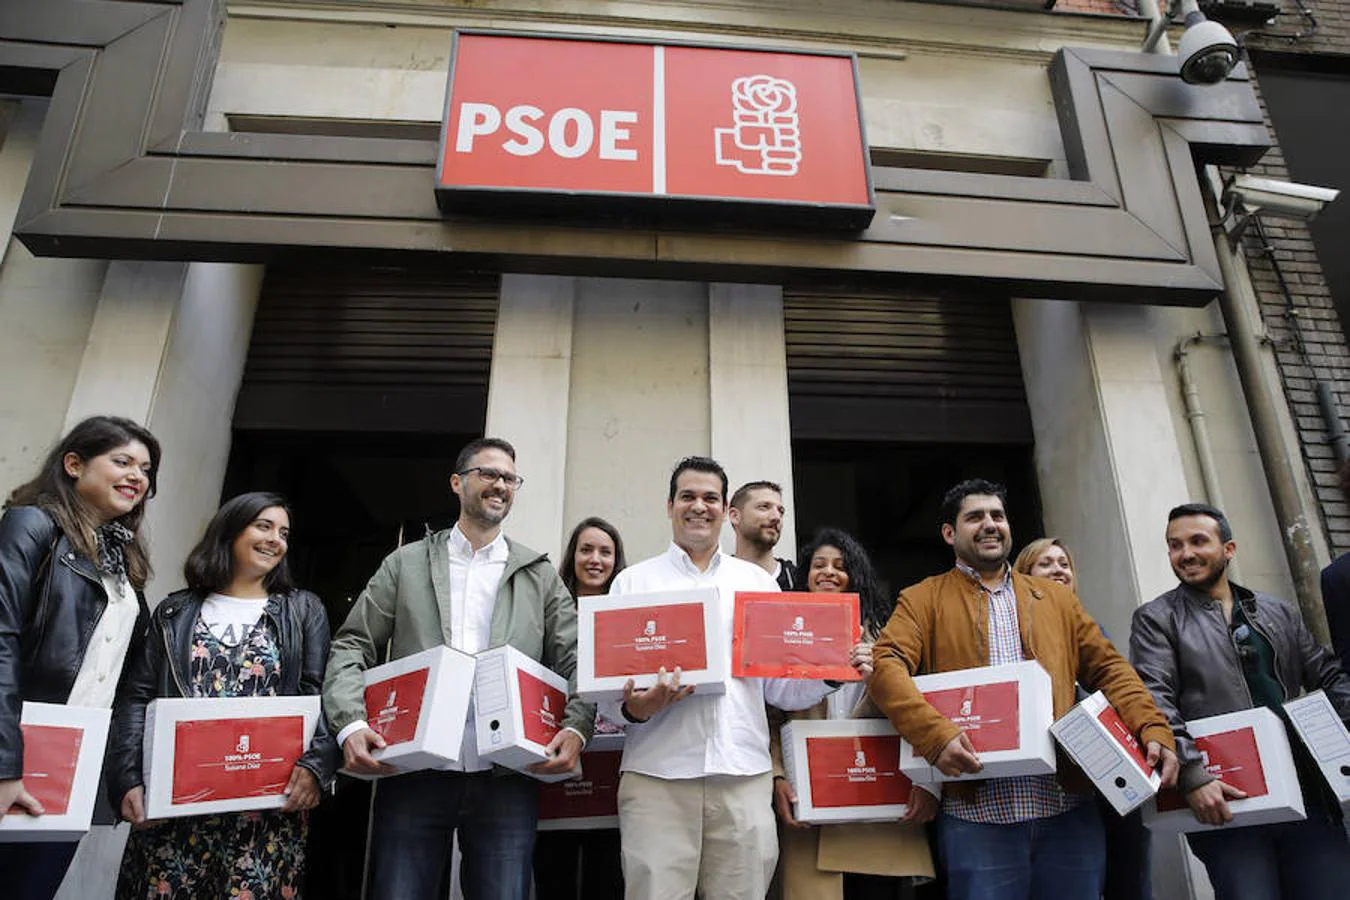 La presidenta de la Junta de Andalucía ha presentado 5.000 avales más que Pedro Sánchez